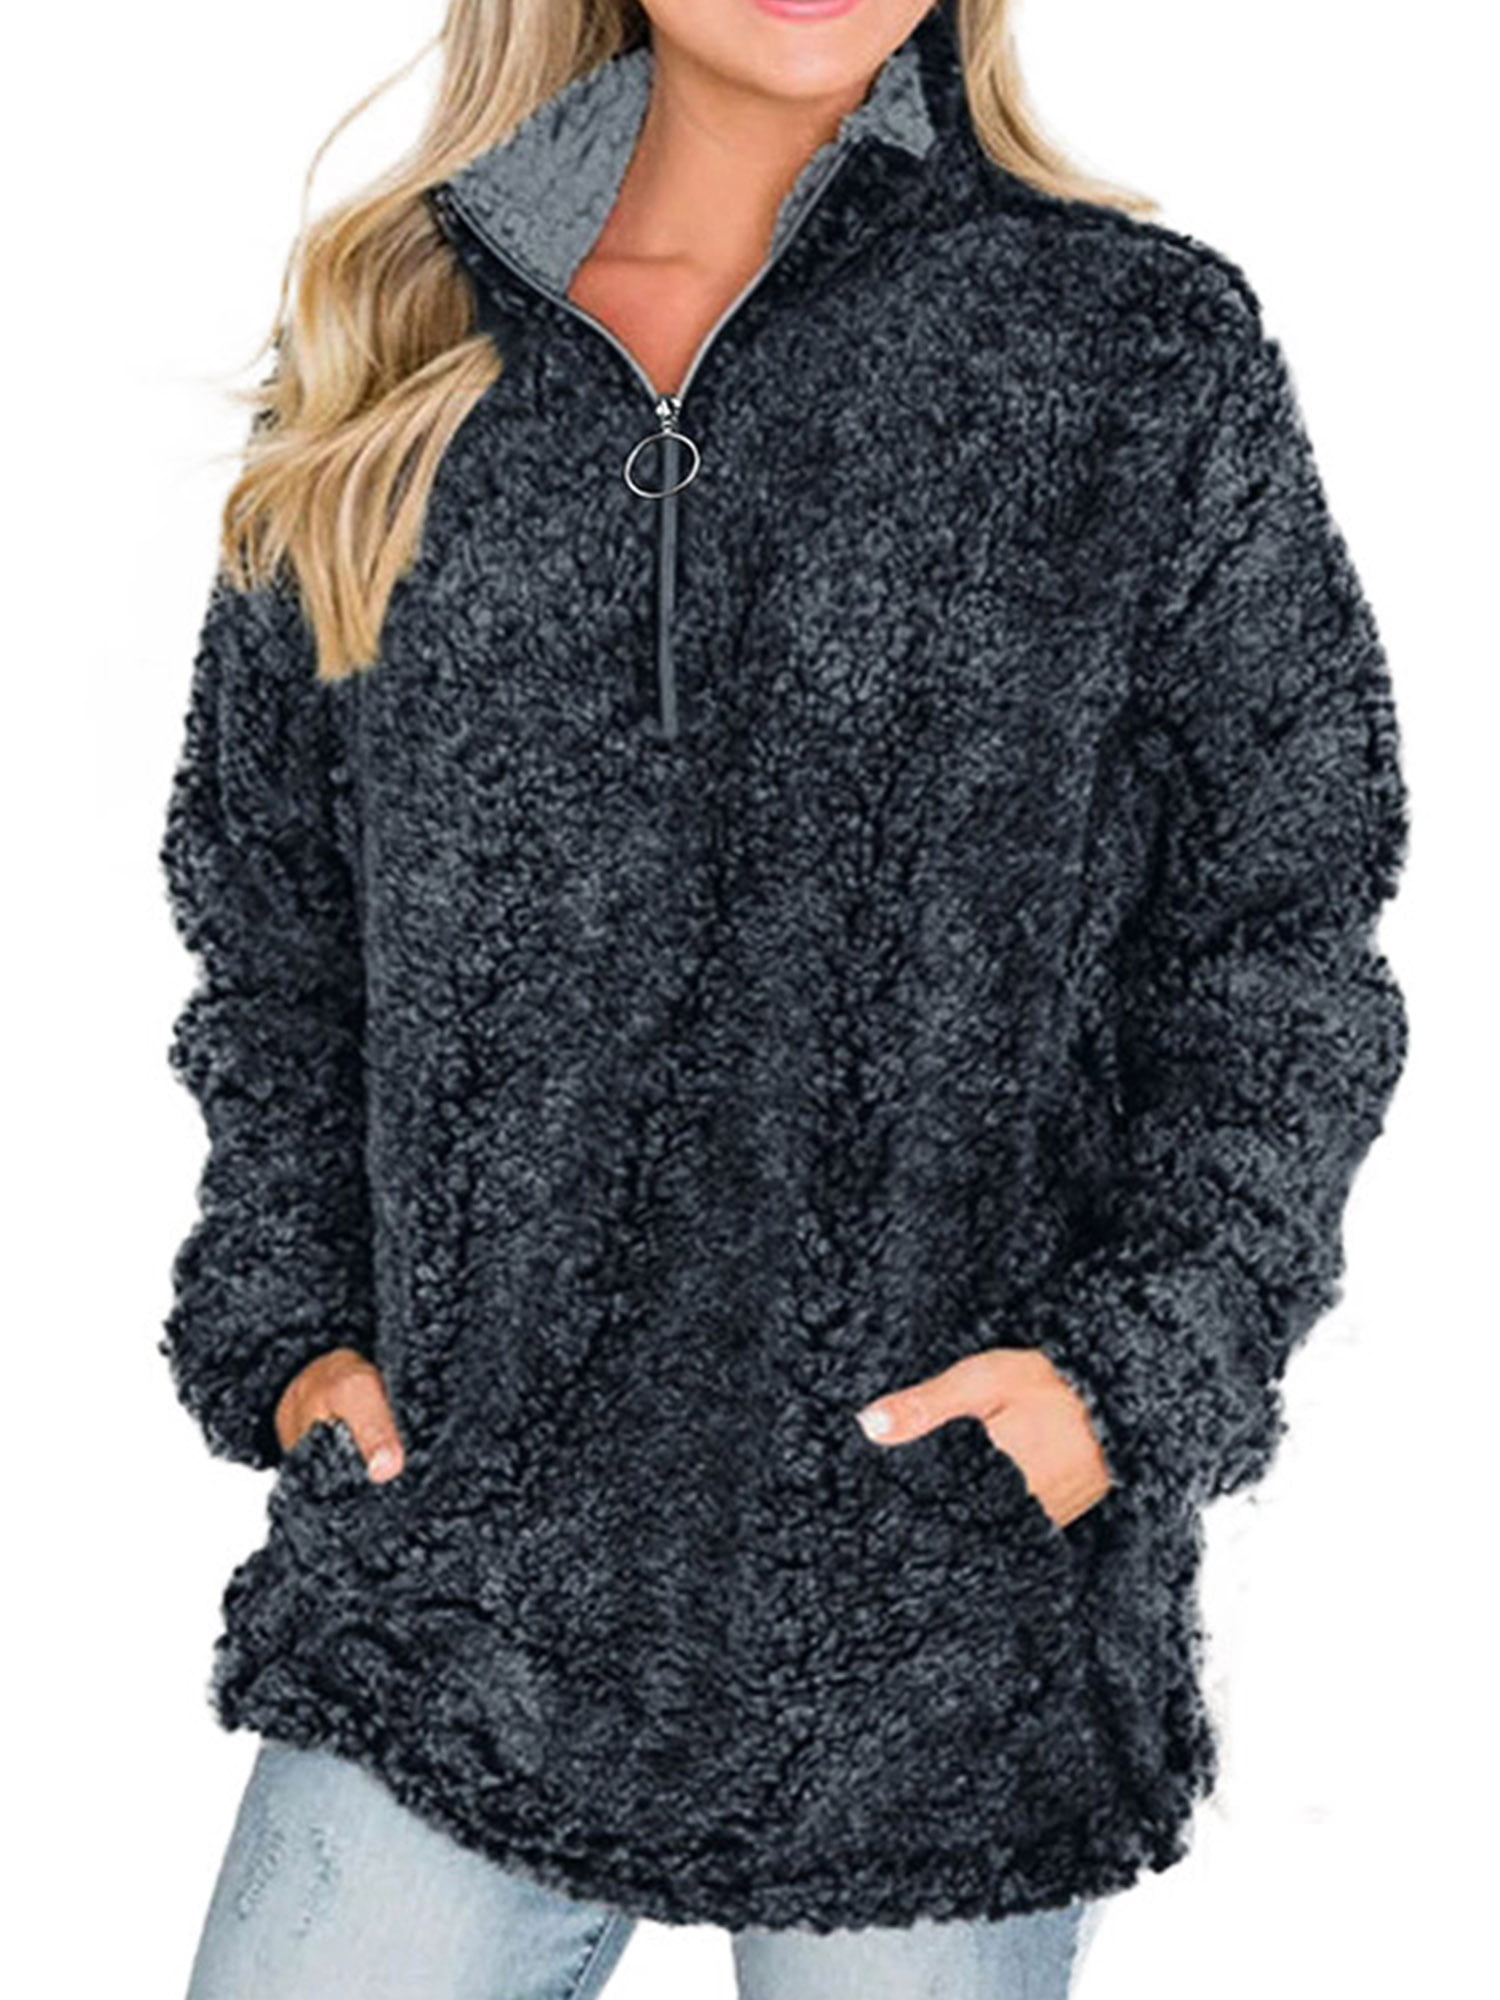 Lallc - Women's Teddy Bear Warm Tops Fluffy Fur Pullover Winter Hoodie ...